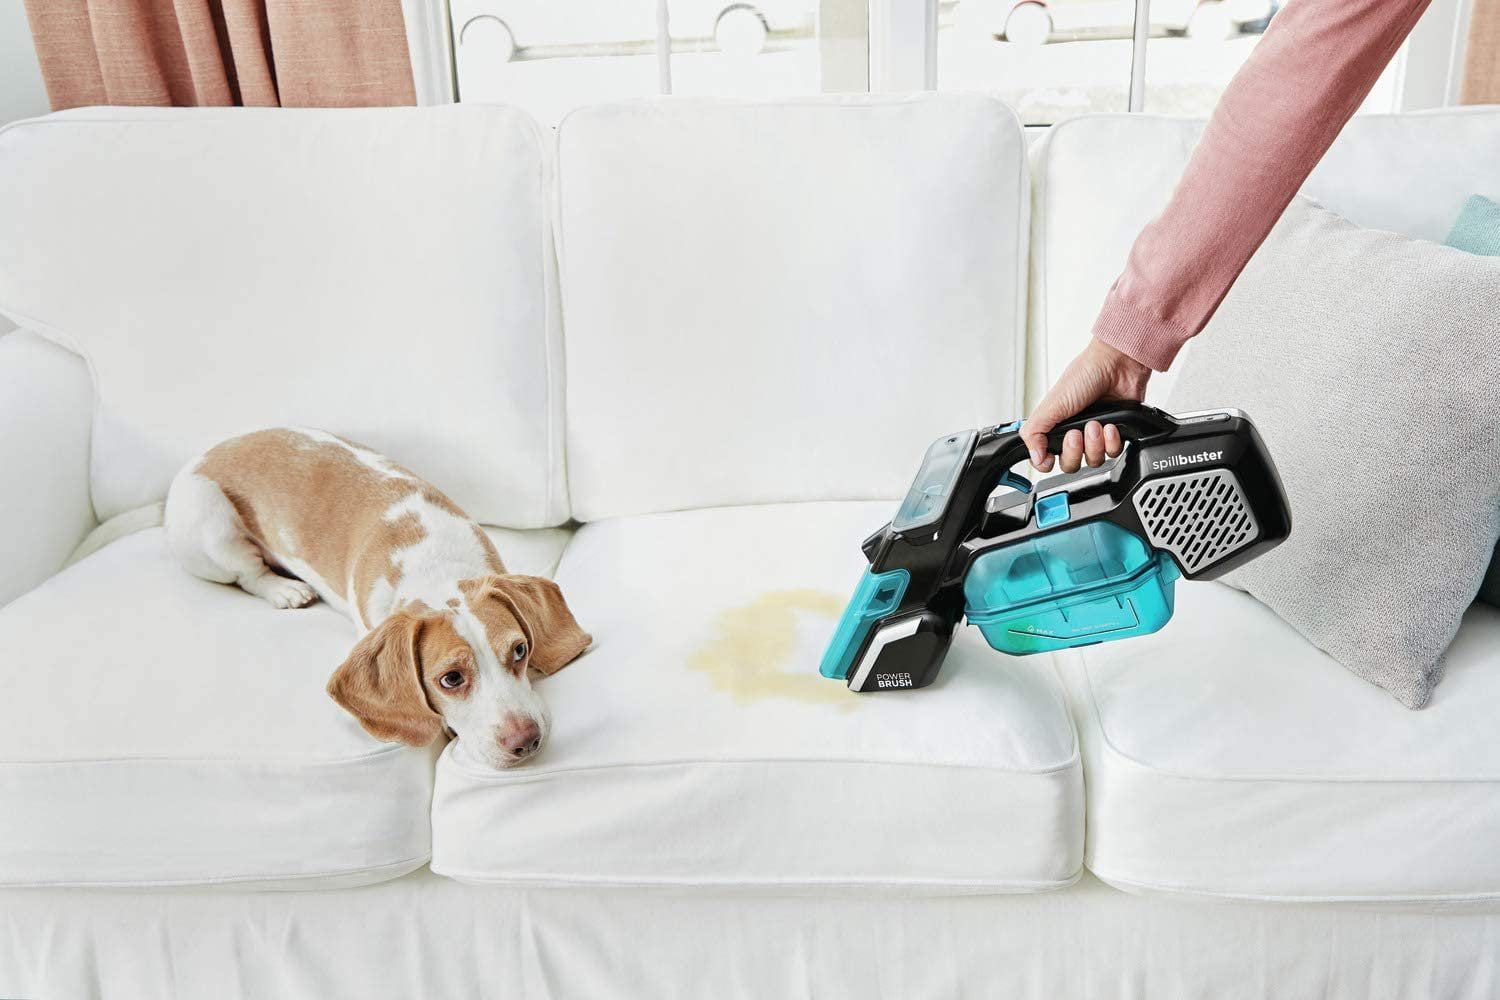 Black & Decker SpillBuster Cordless Spill & Spot Carpet Cleaner